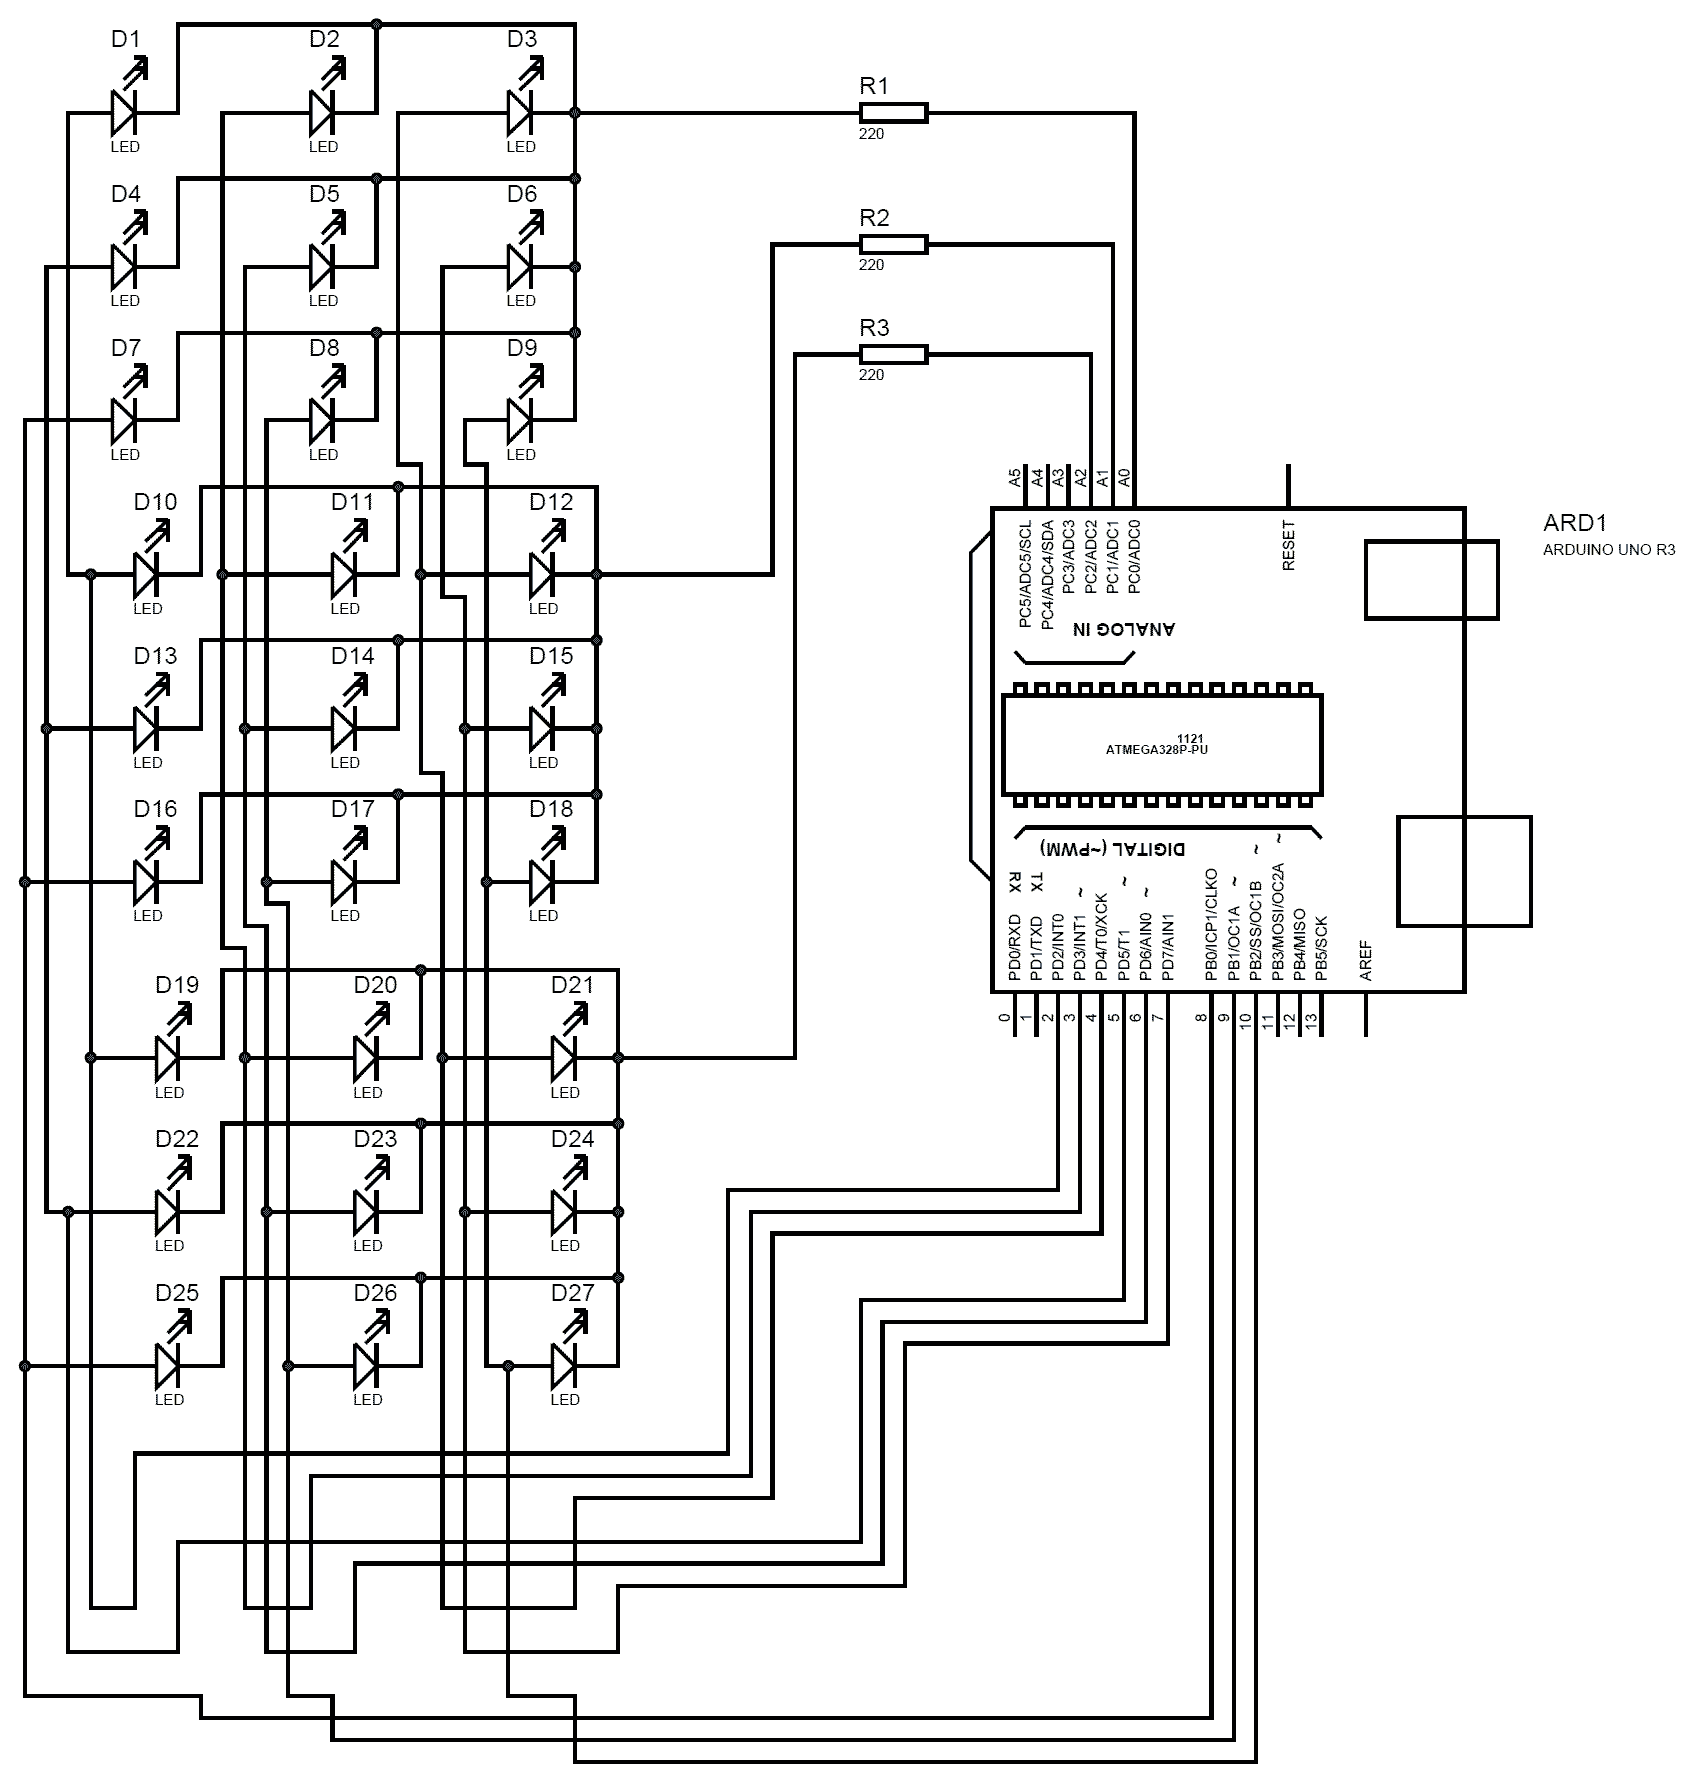 3X3X3 LED CUBE USING ARDUINO UNO Circuit diagram